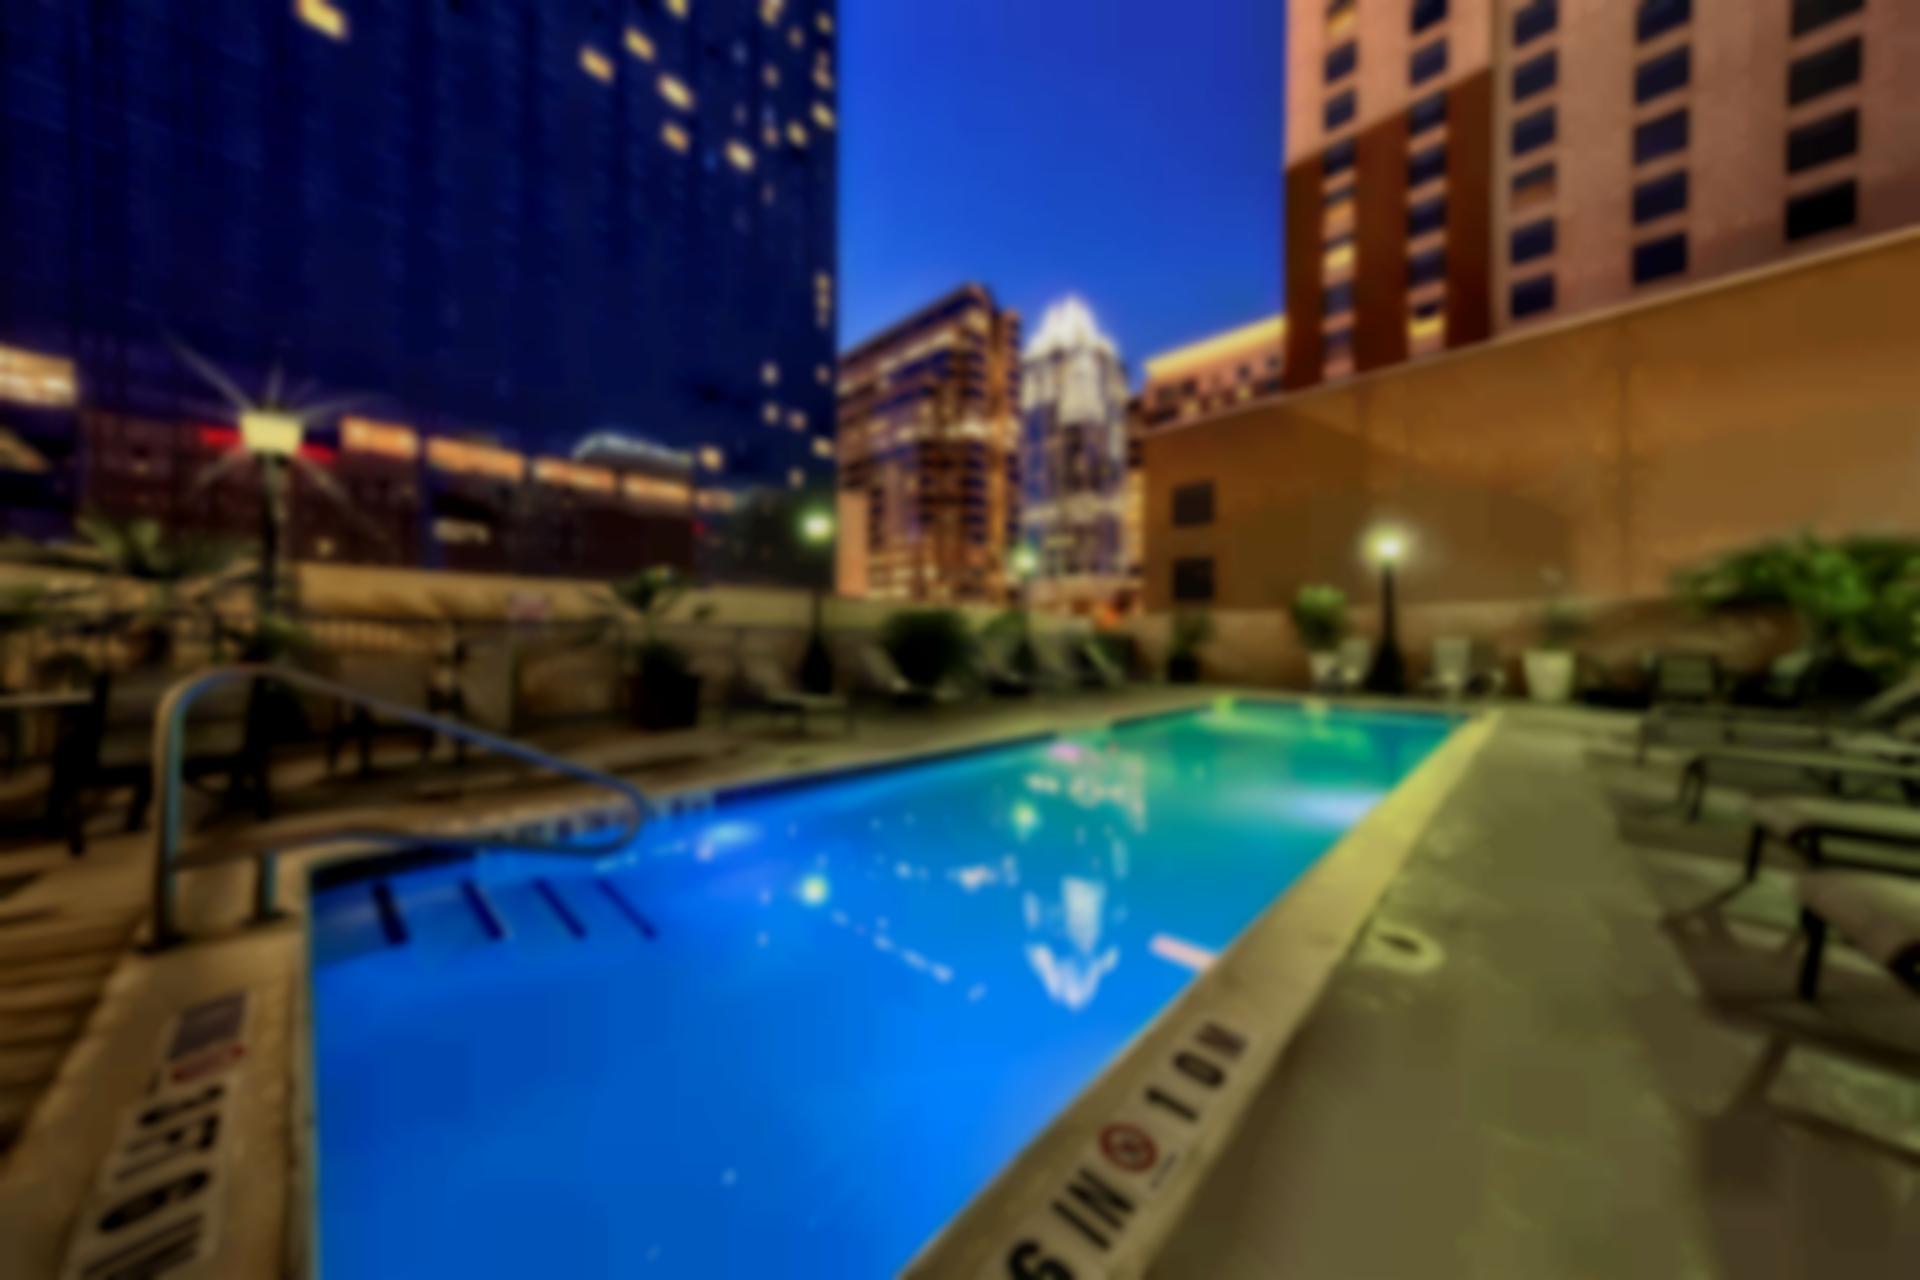 Hampton Inn & Suites Austin - Downtown / Convention Center